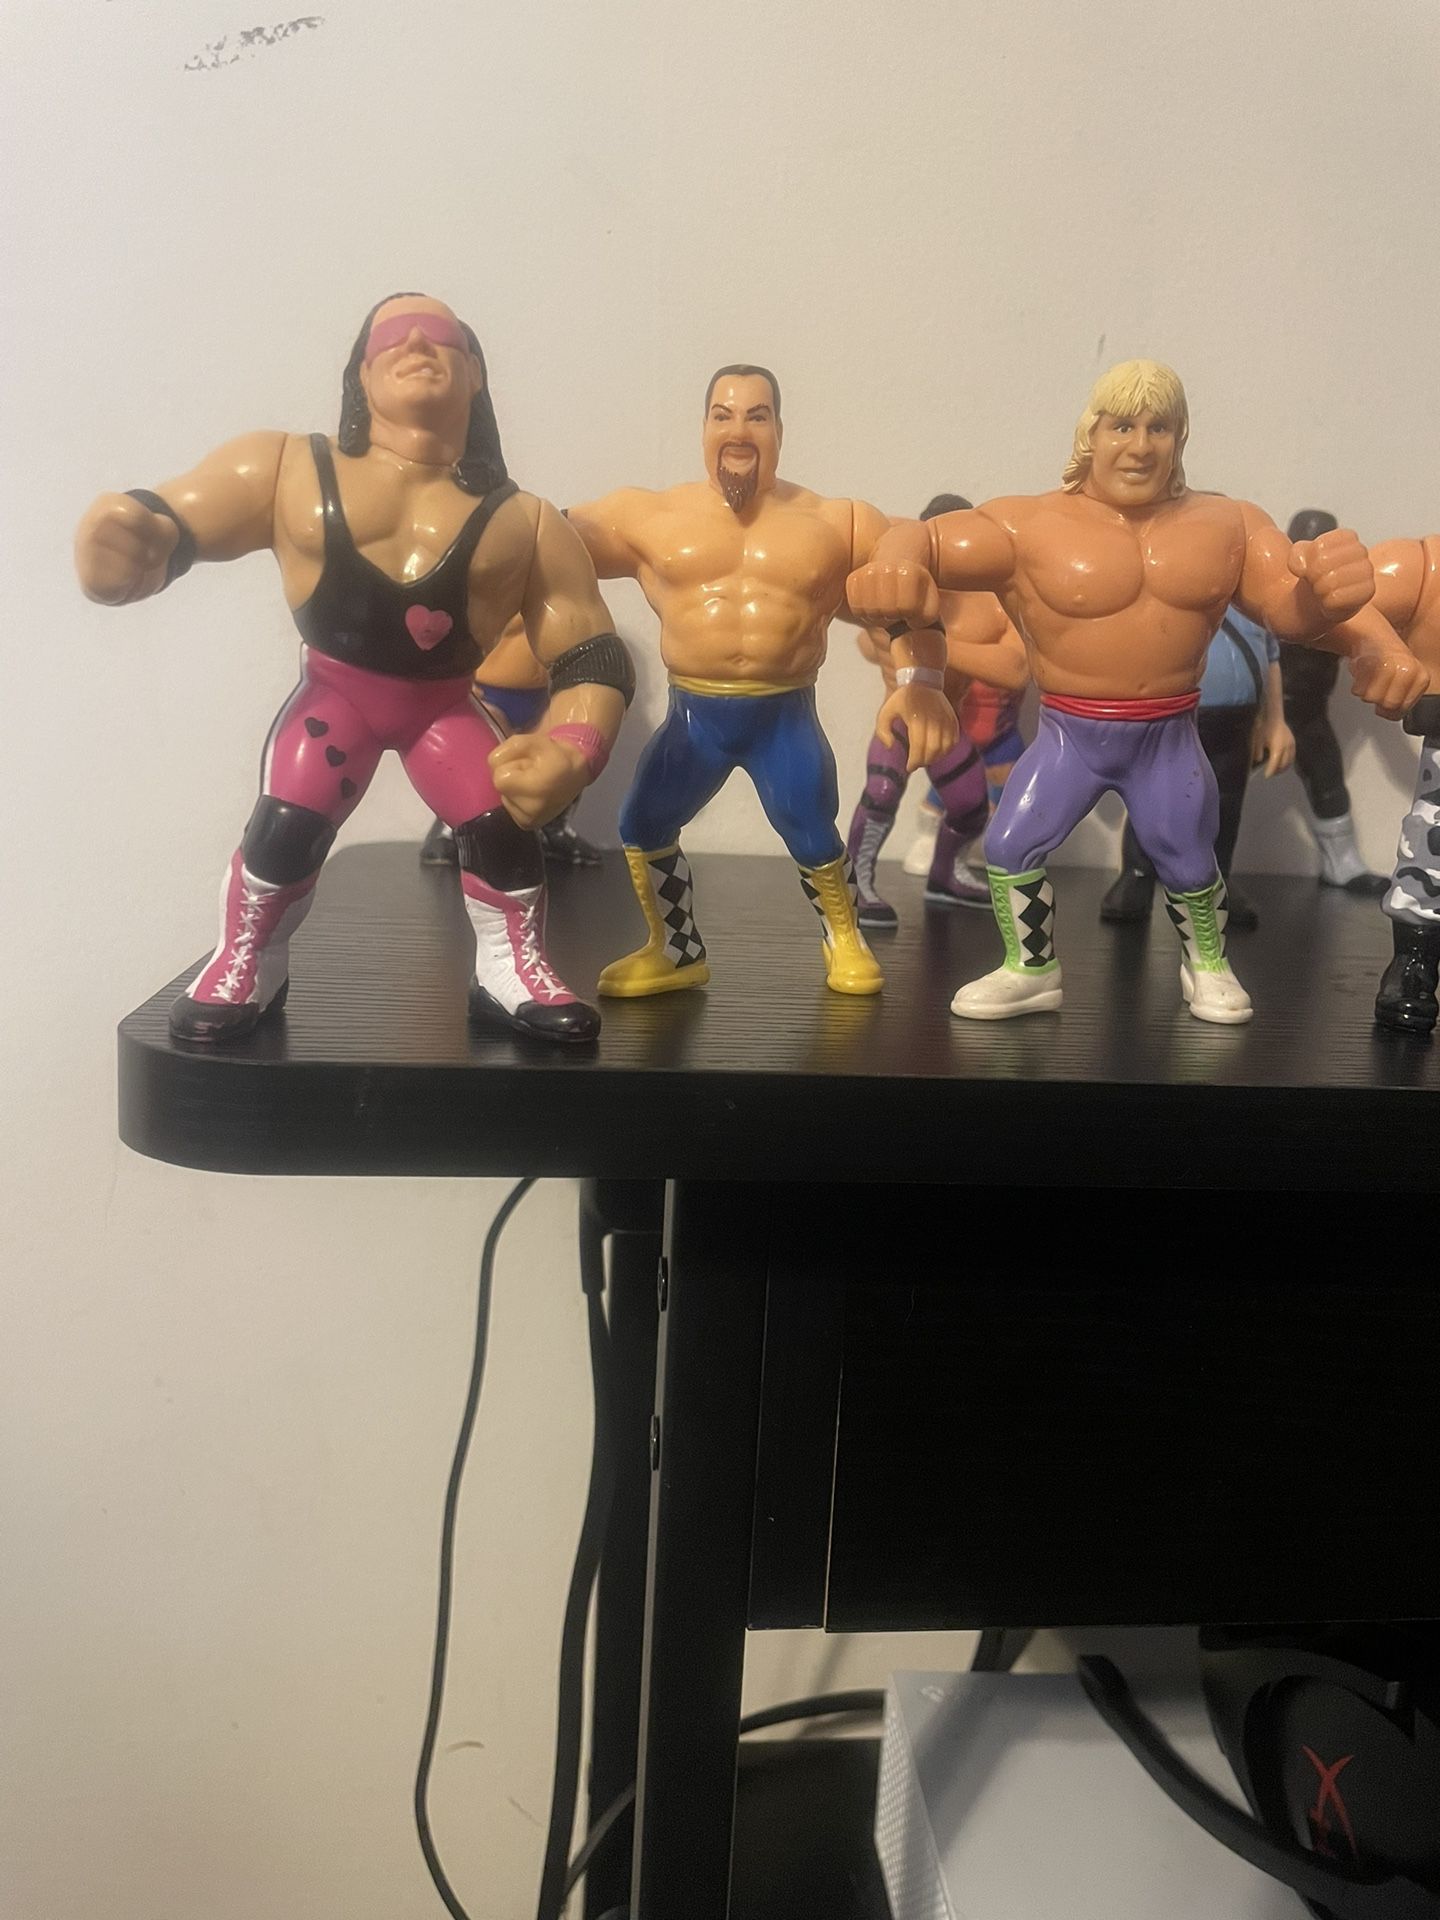 Lot of 15 WWF Hasbro Figures